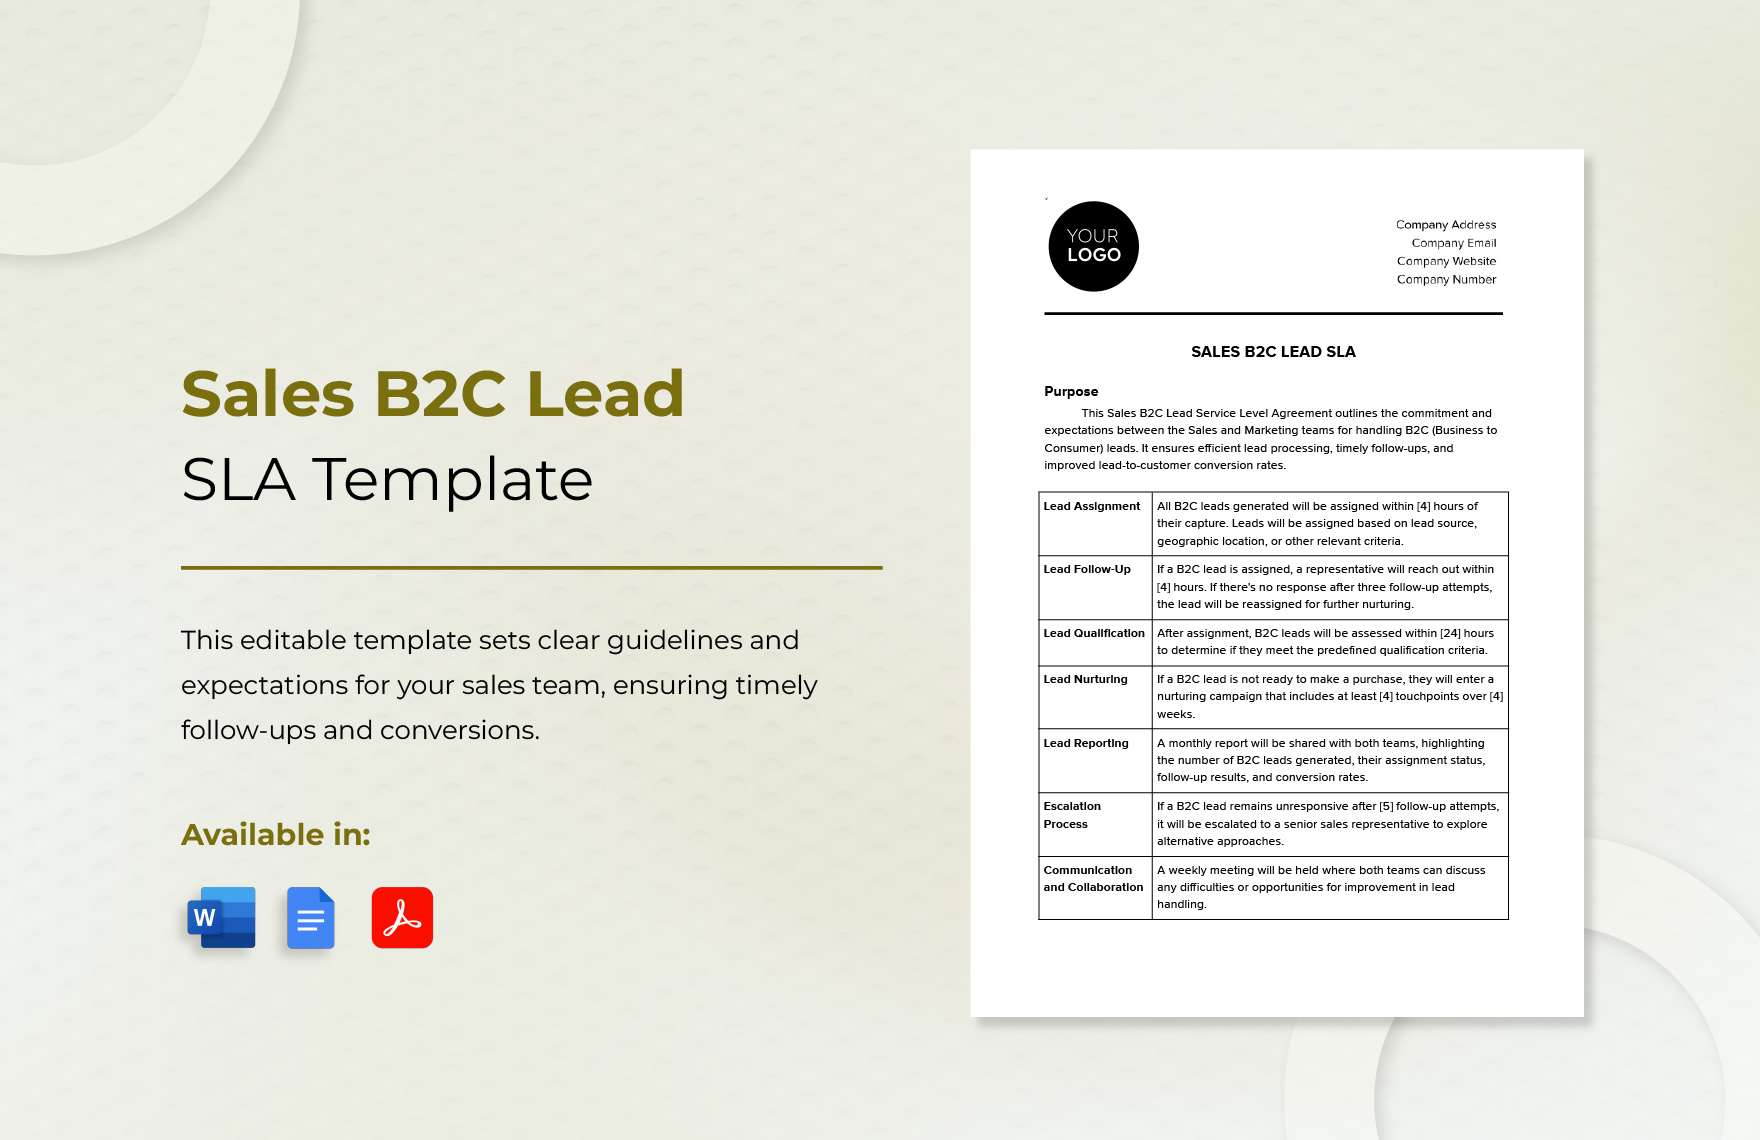 Sales B2C Lead SLA Template